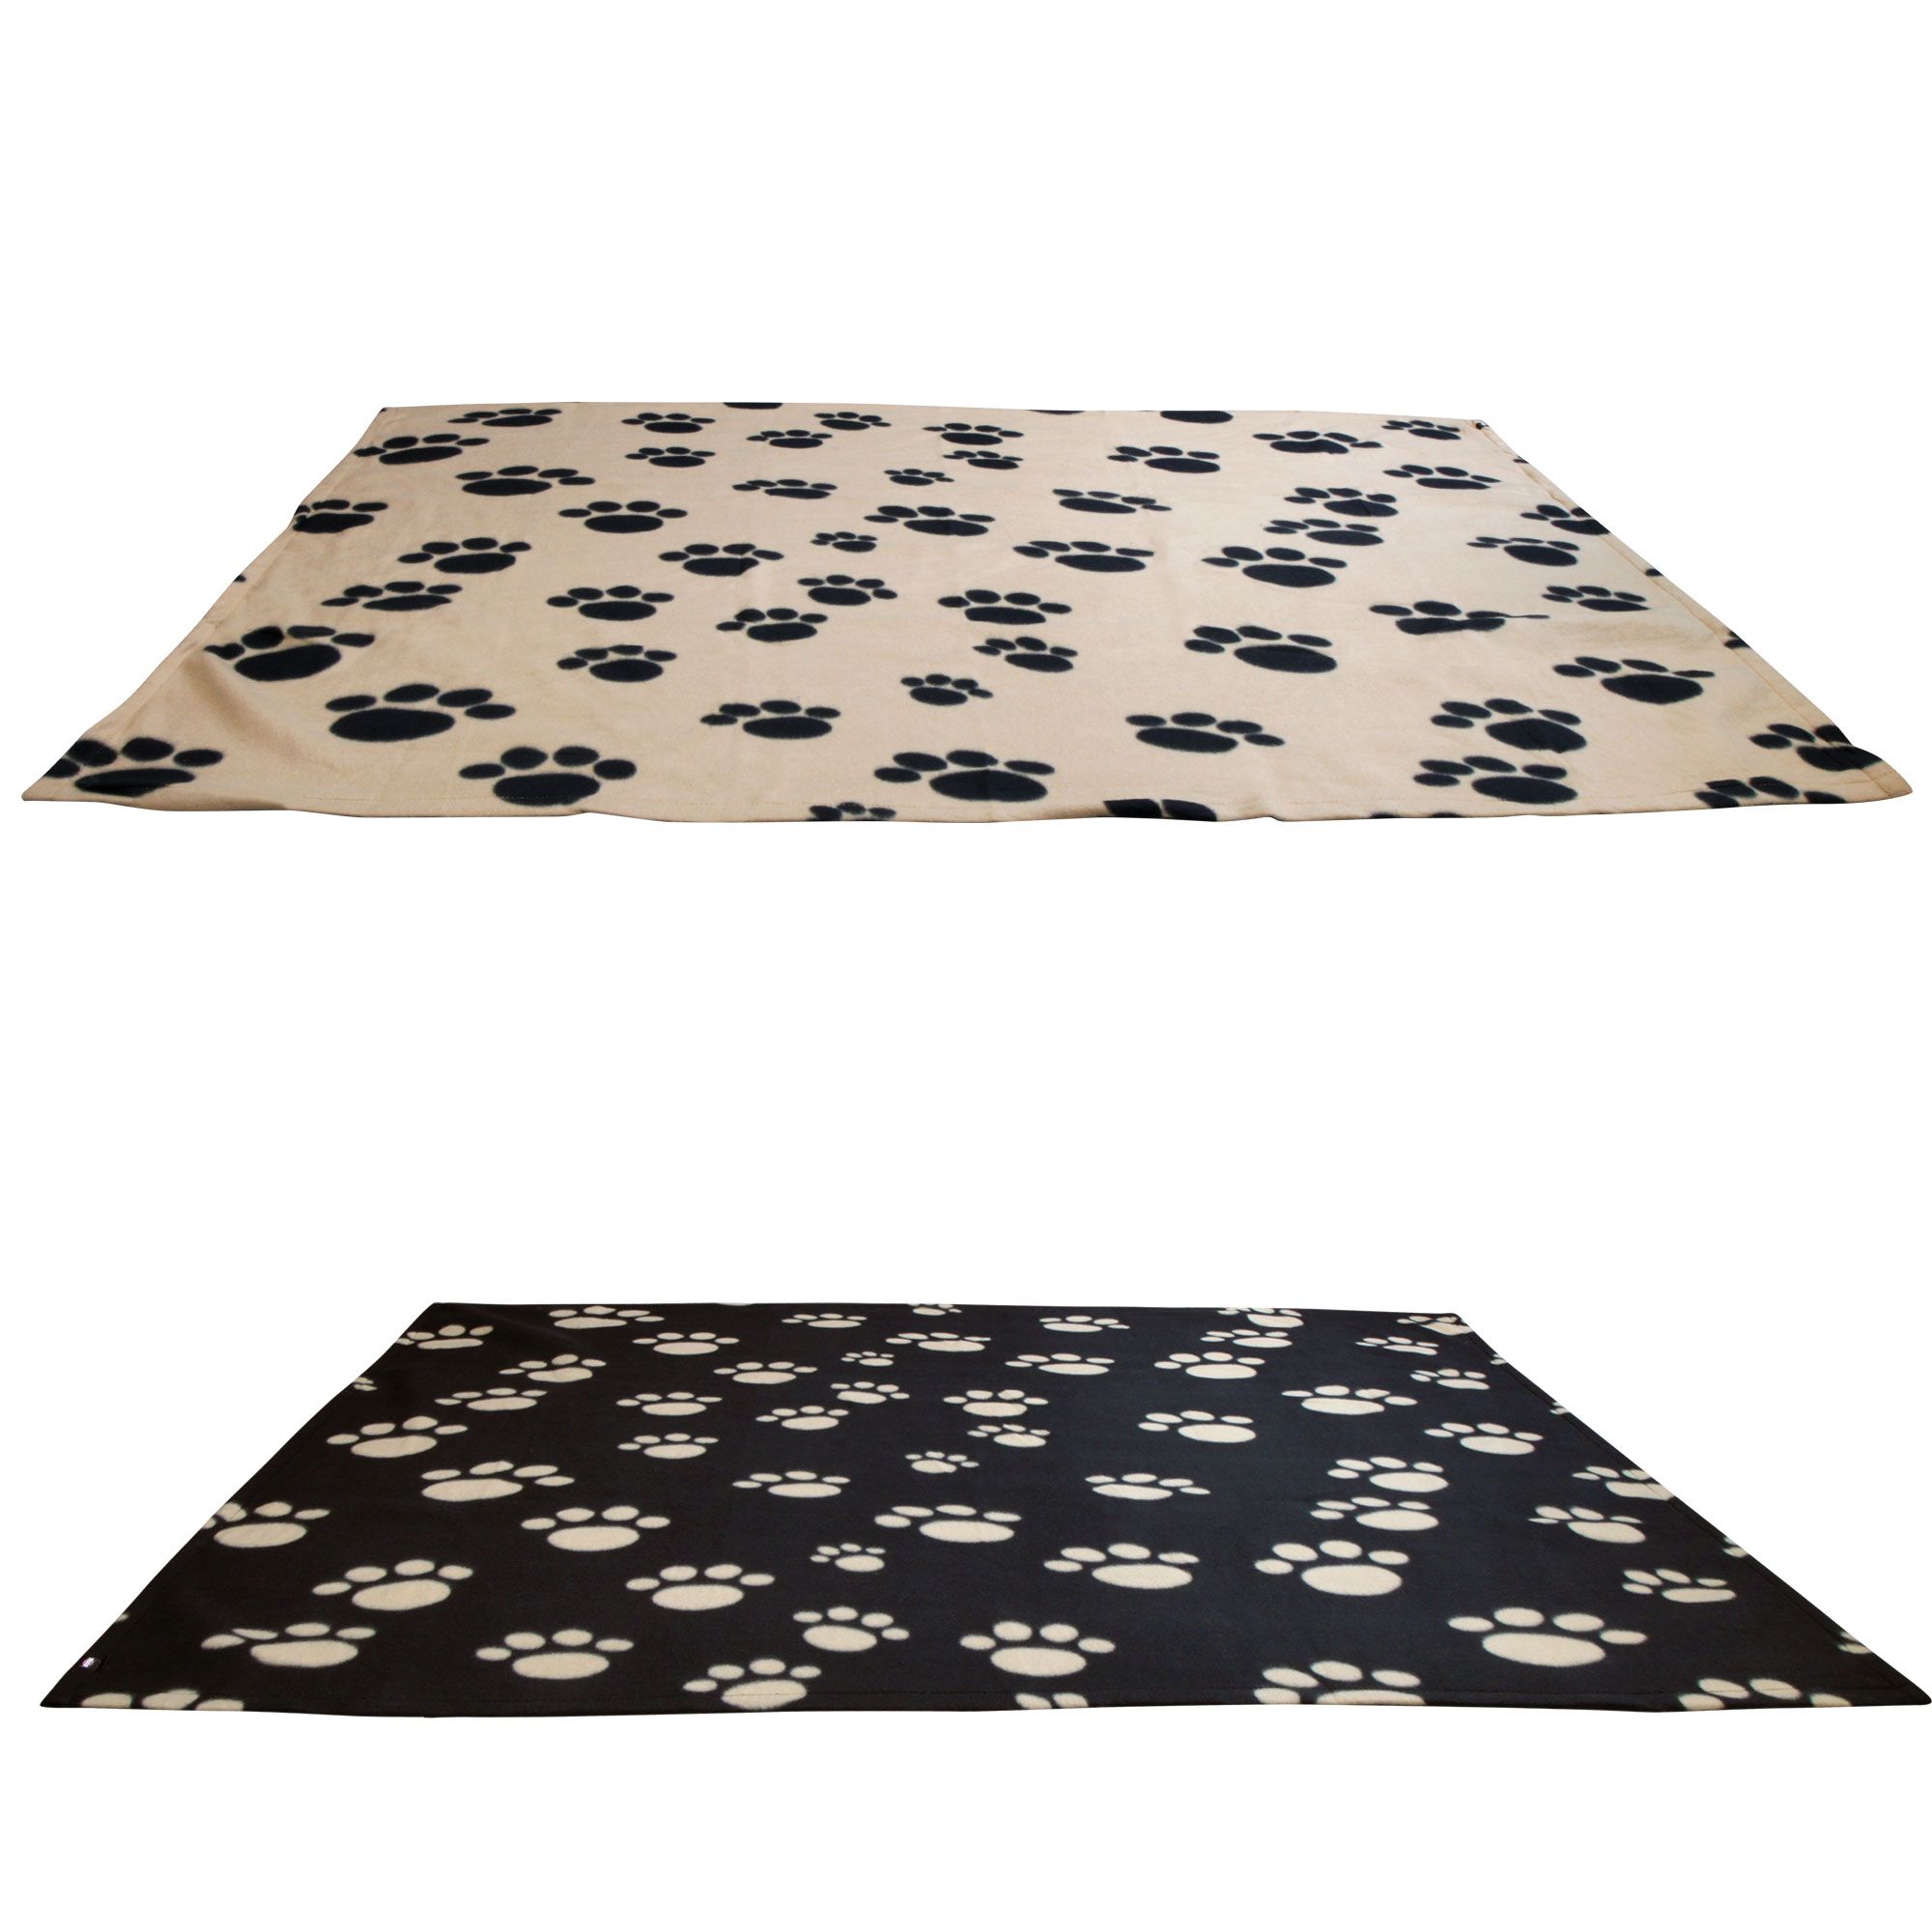 Knüller - Kuschel - Decke - Decken -  Hundedecke -  waschb.b.30°C  - schwarz mit beigen Pfoten